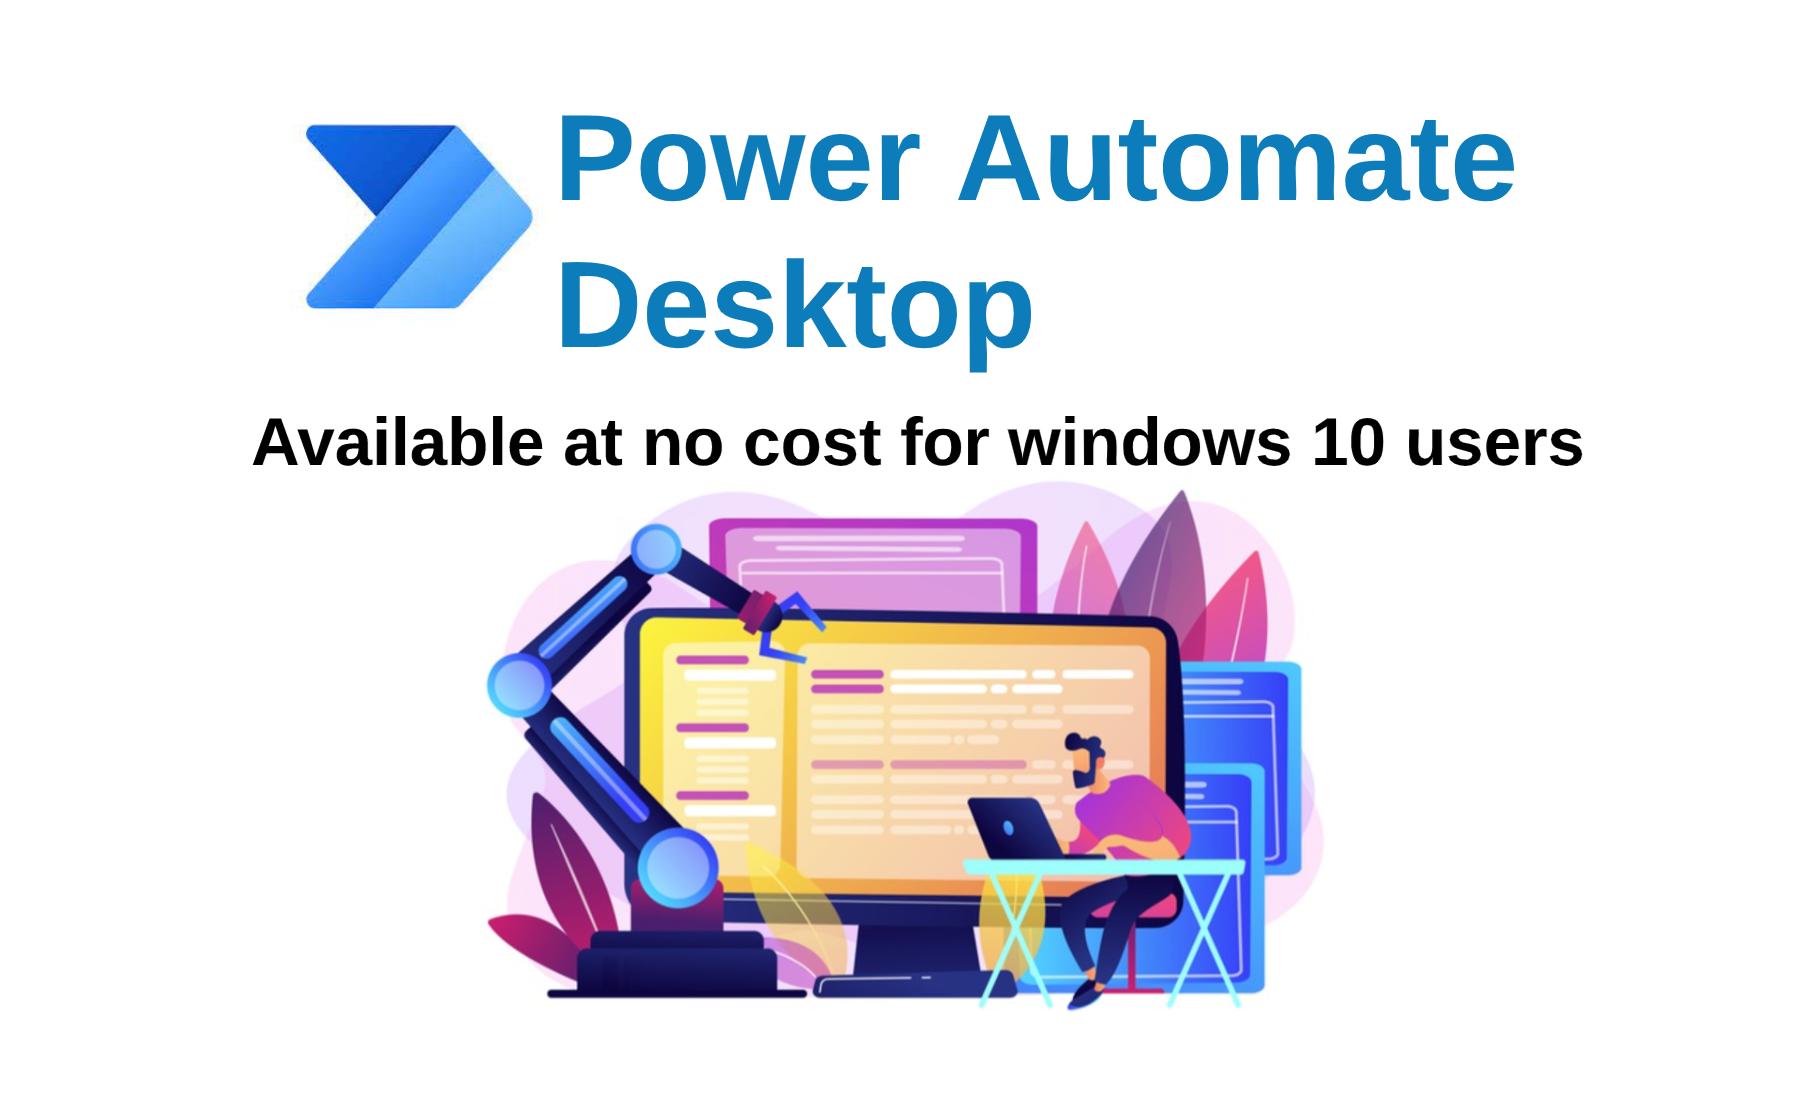 desktop flow power automate